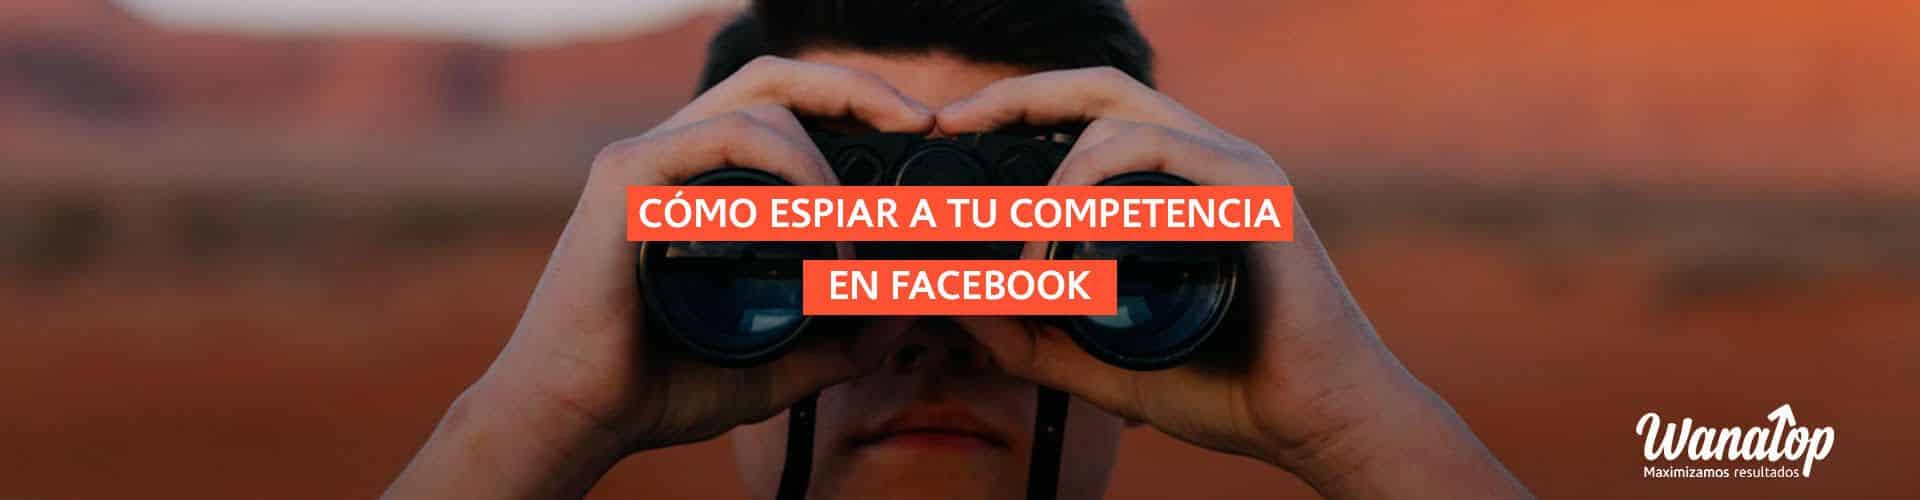 Cómo espiar a tu competencia en Facebook